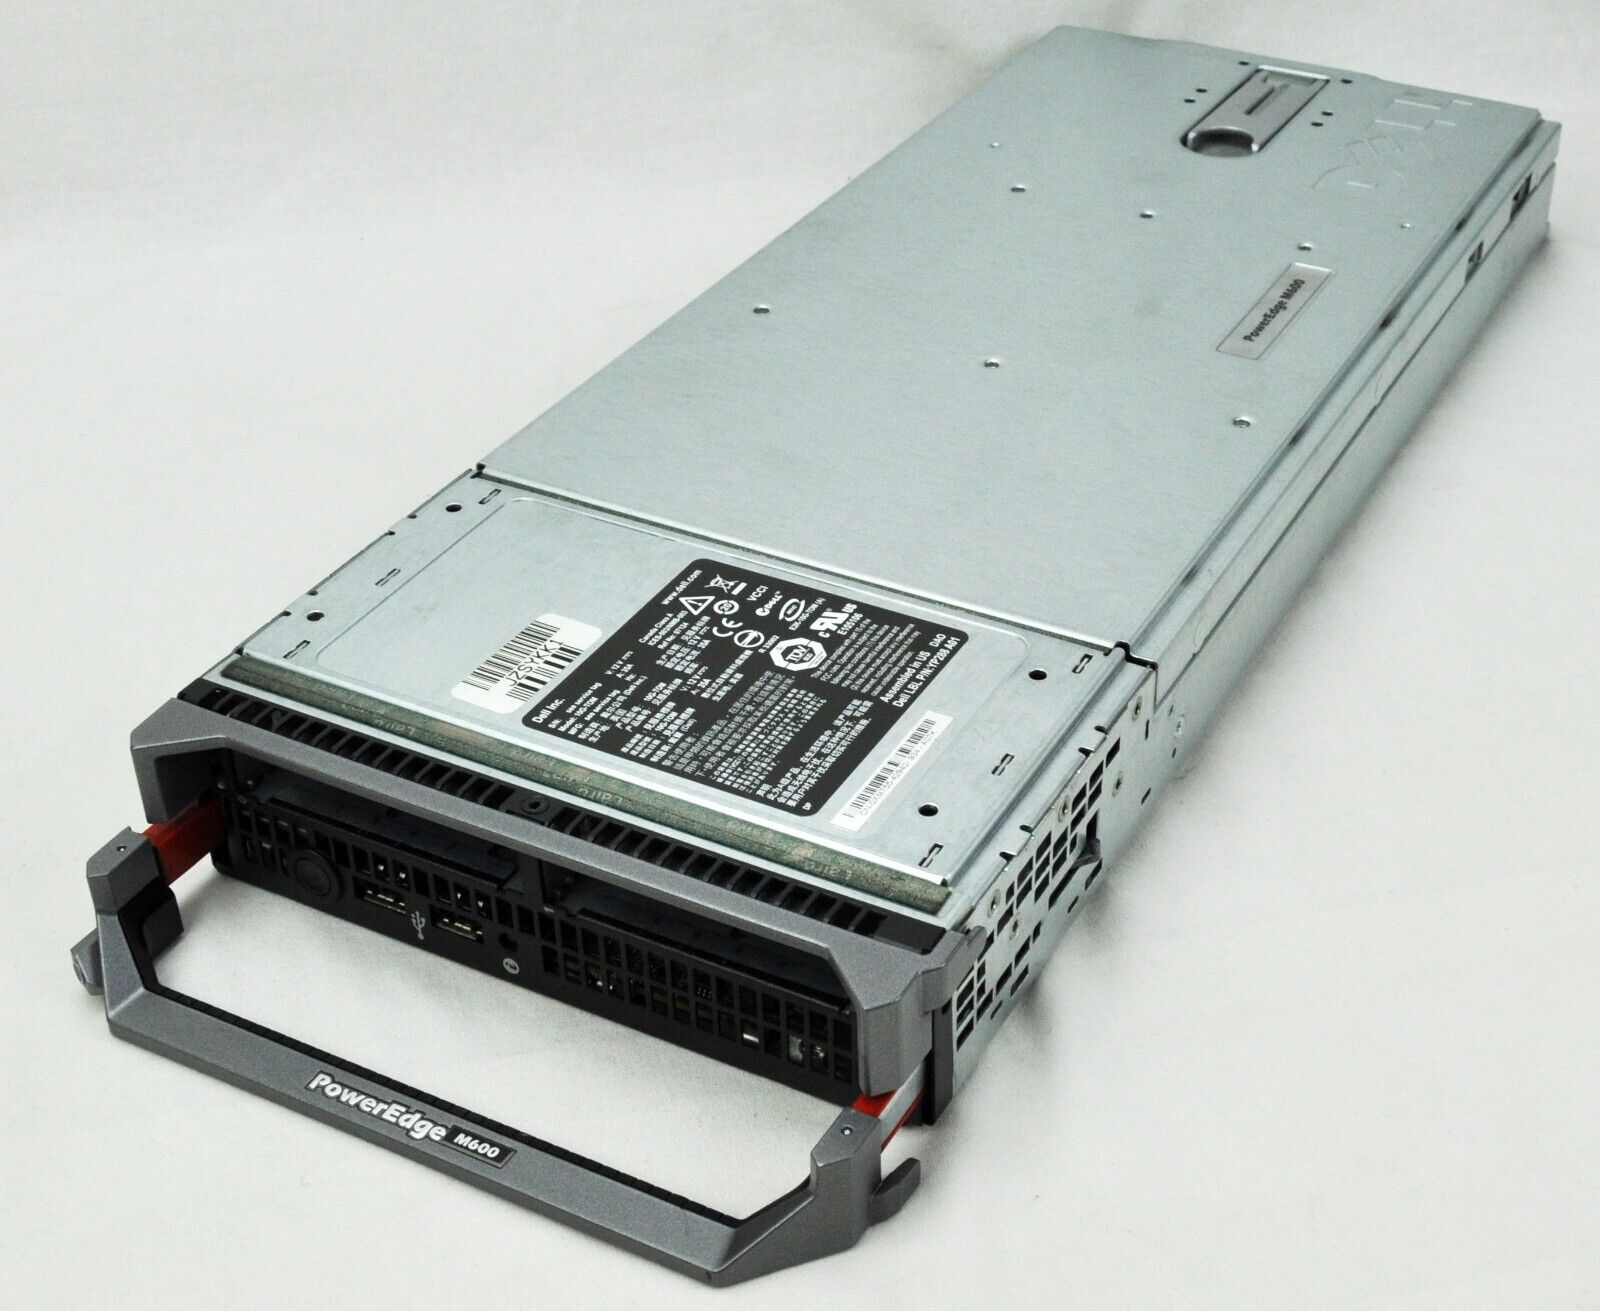 Dell PowerEdge M600 Blade Server 2 x Quad Core E5405 2.0 Ghz 32GB RAM No HDD